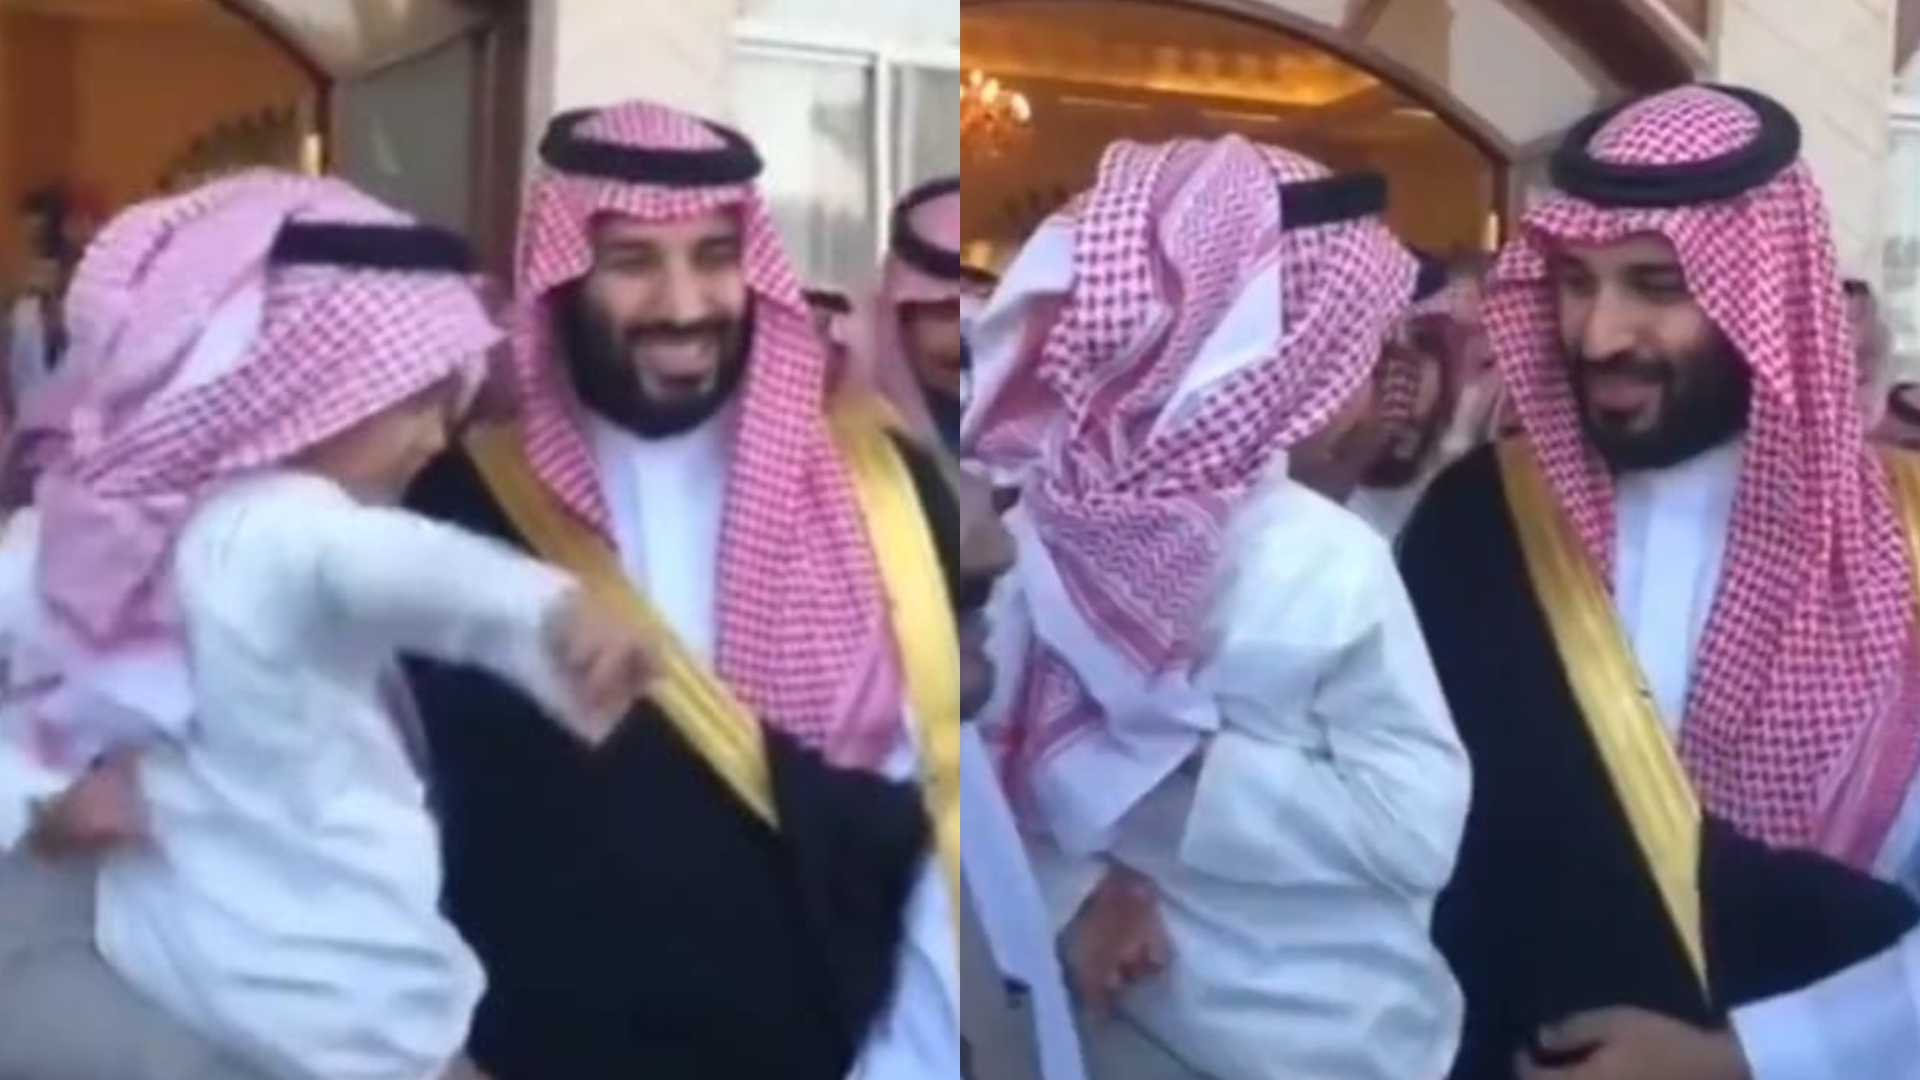 Vídeo: Garotinho pede uma Mercedes a príncipe da Arábia Saudita, e atitude do herdeiro choca a web